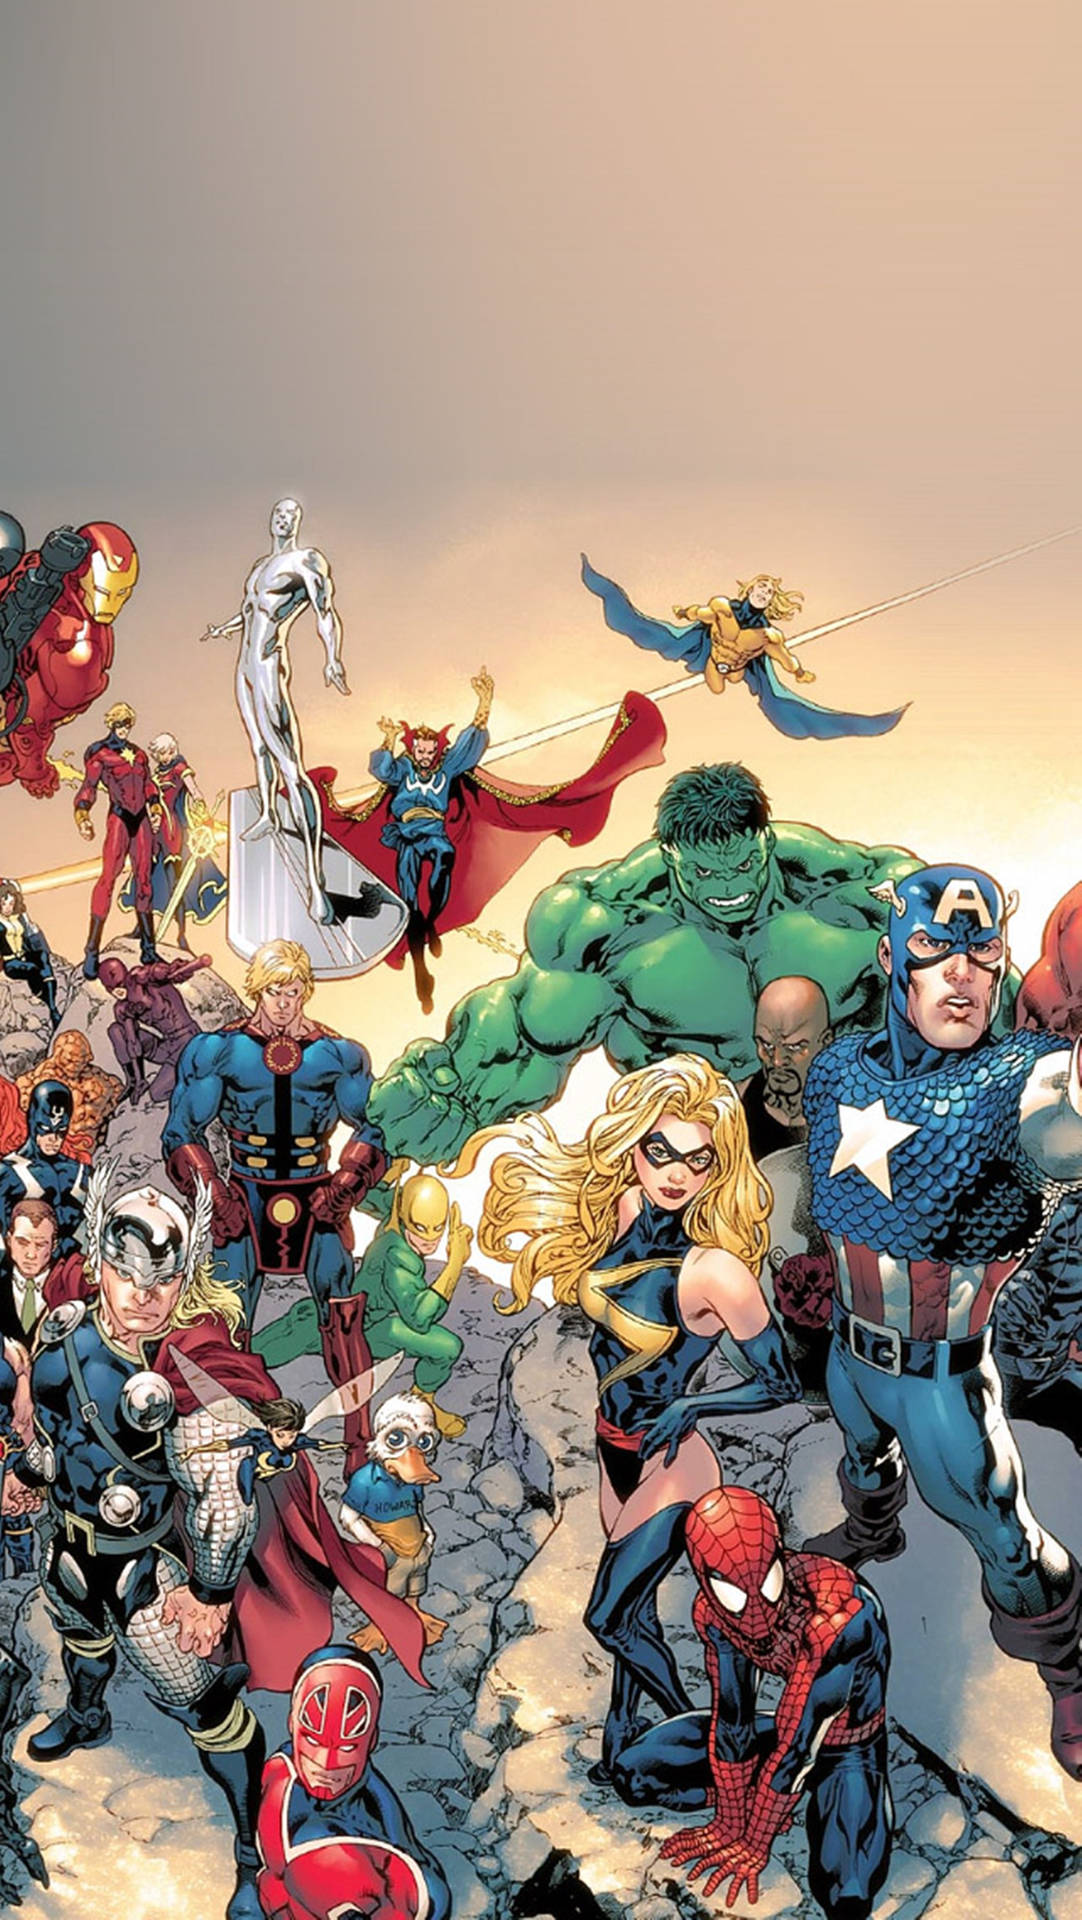 Avengerscomics - Avengers - Avengers - Avengers - A Wallpaper